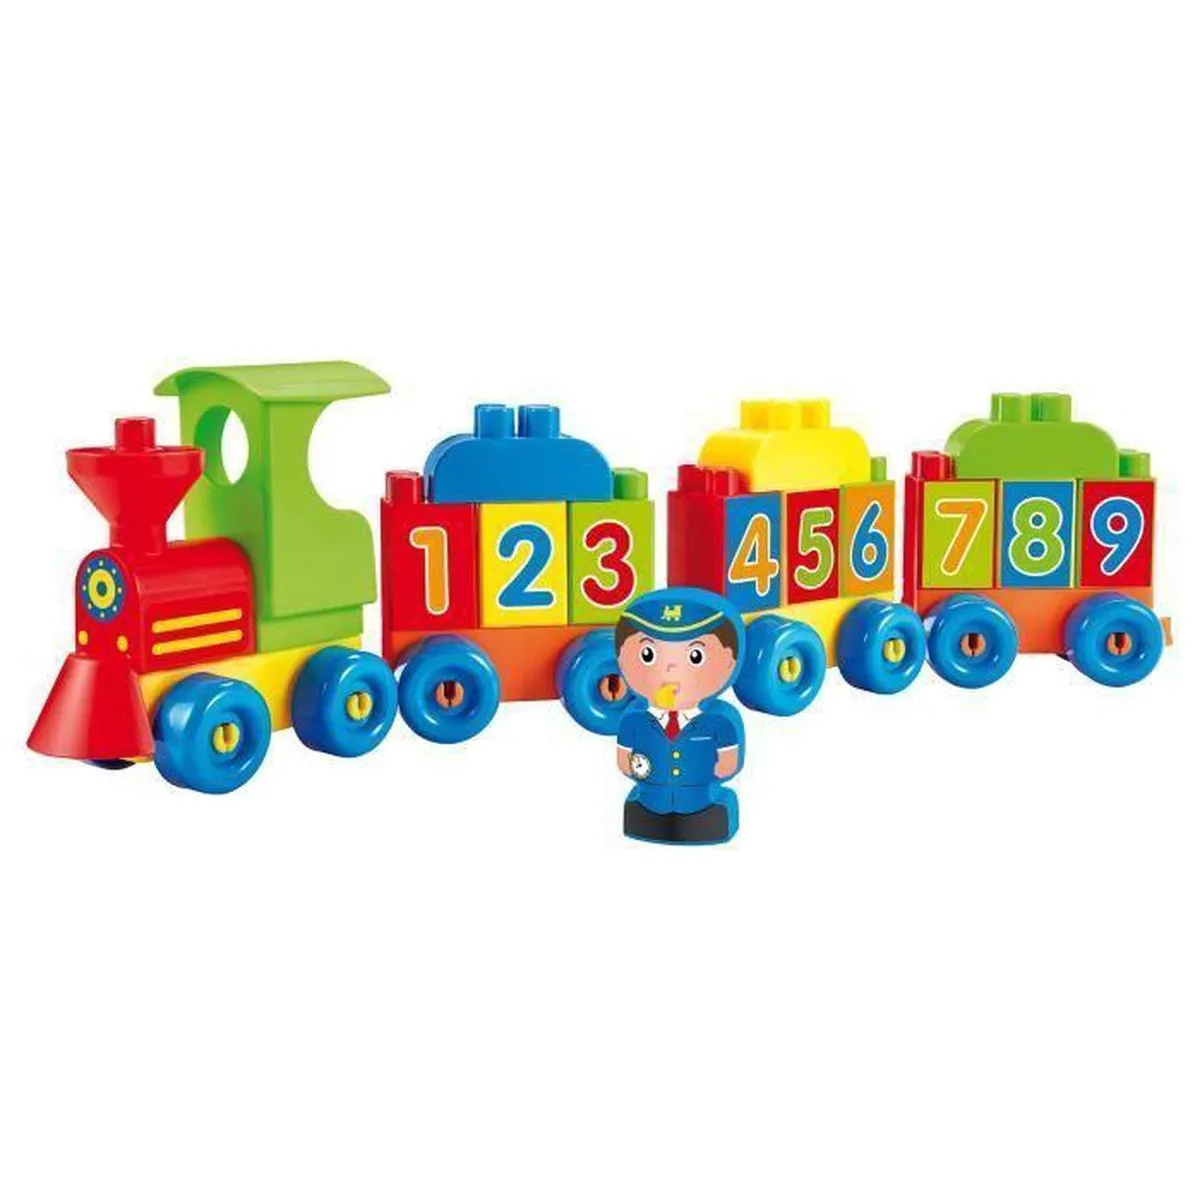 ECOIFFIER 3349 Trein van cijfers en letters - Constructiespeelgoed - Modelbouw - Bouwpakket speelgoed